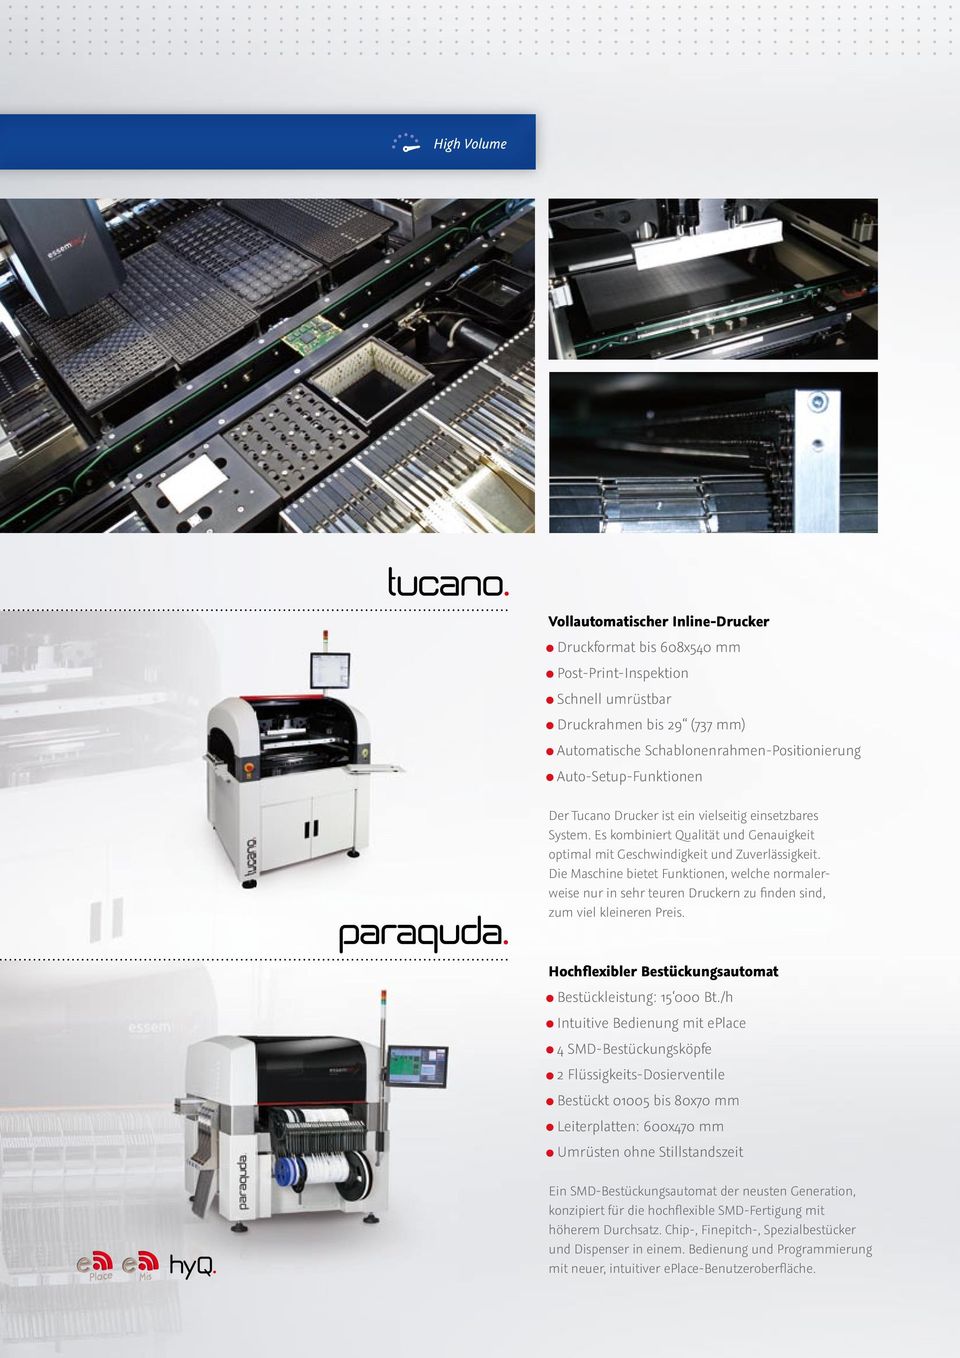 Tucano Drucker ist ein vielseitig einsetzbares System. Es kombiniert Qualität und Genauigkeit optimal mit Geschwindigkeit und Zuverlässigkeit.